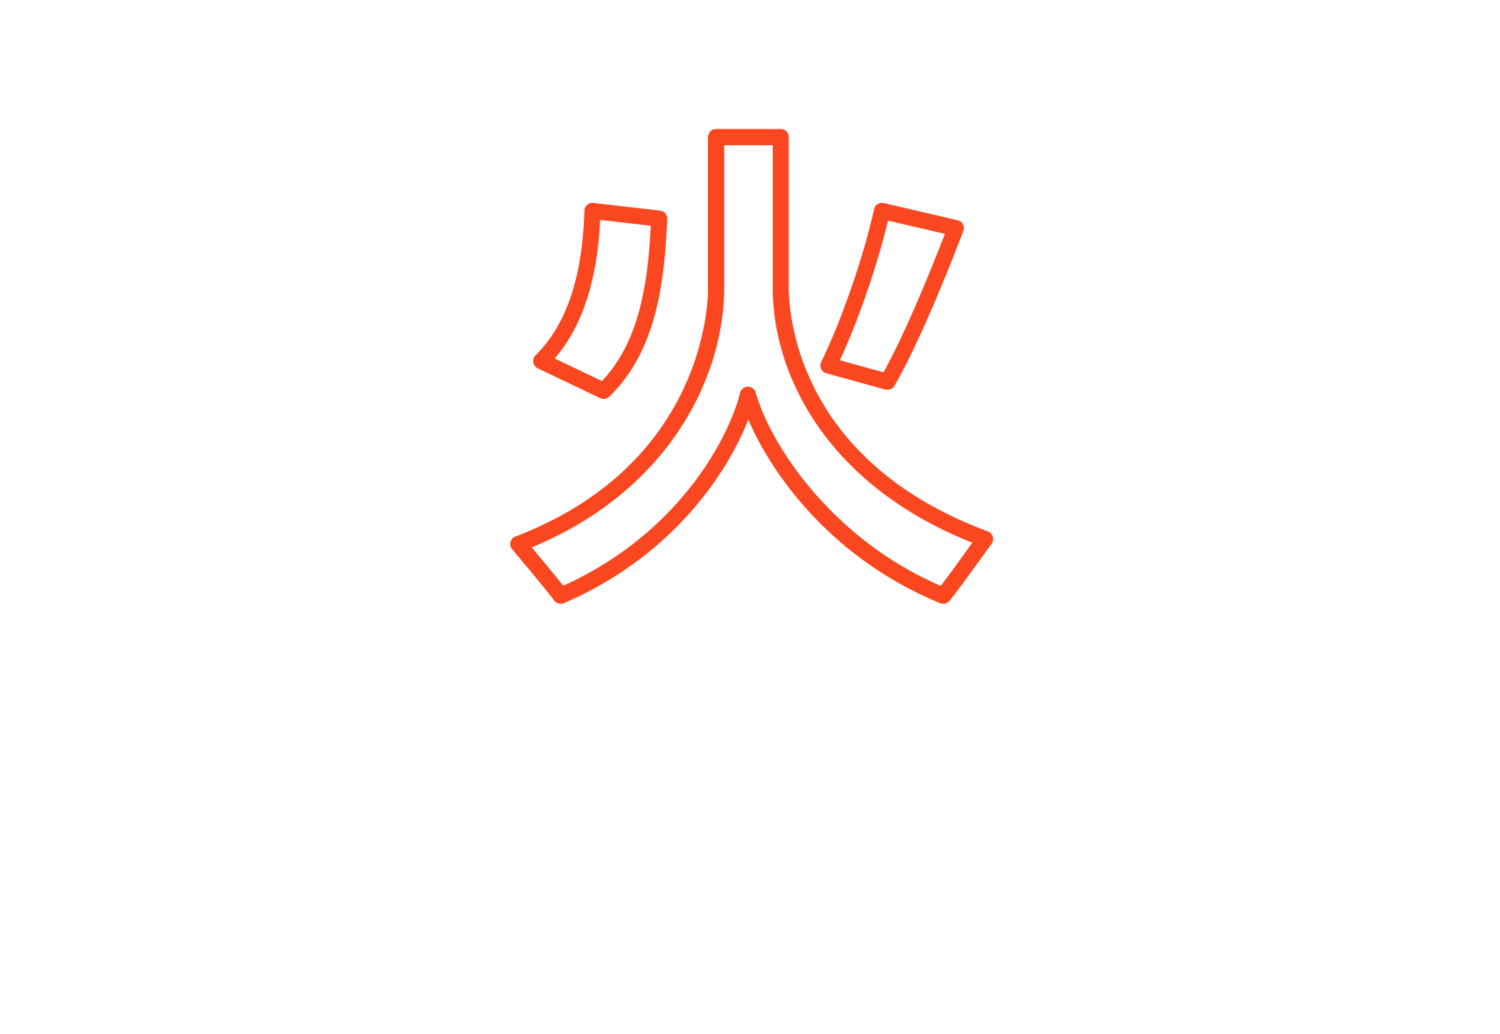 Robata Logo.png